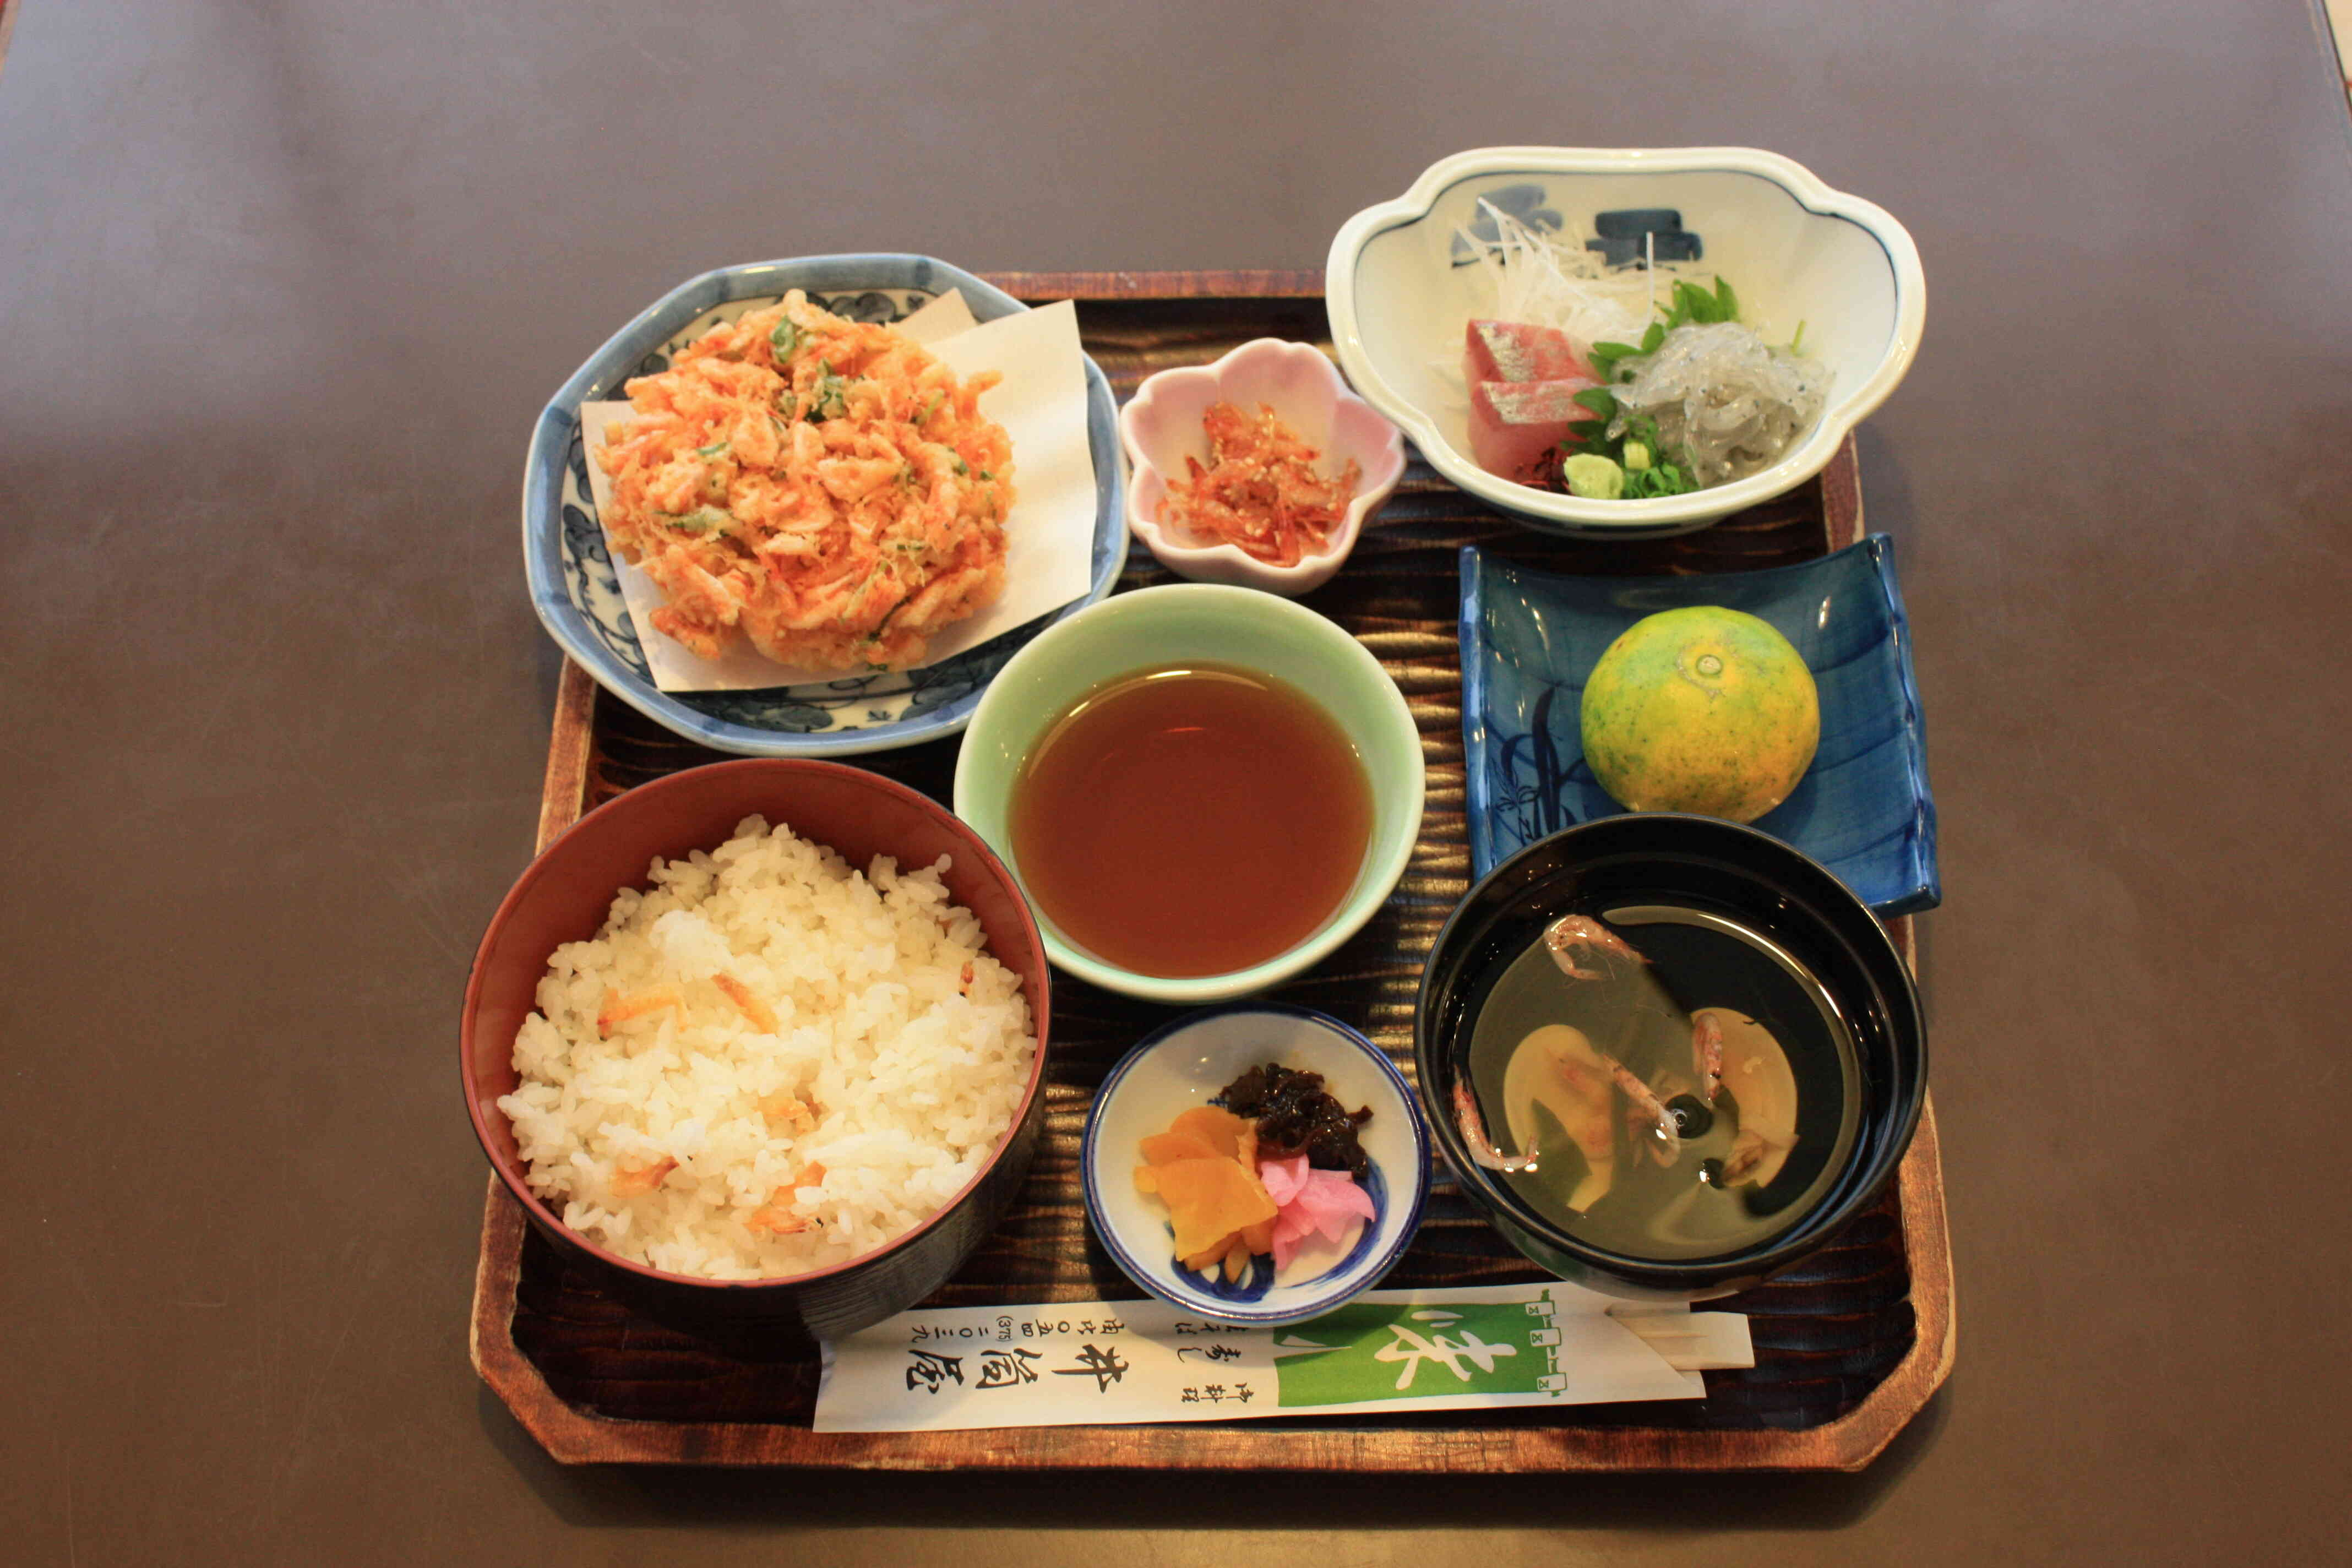 駿河定食は、当店1番の人気メニューで桜えび料理で代表されるかき揚げと地魚の刺身の付いた定食です。